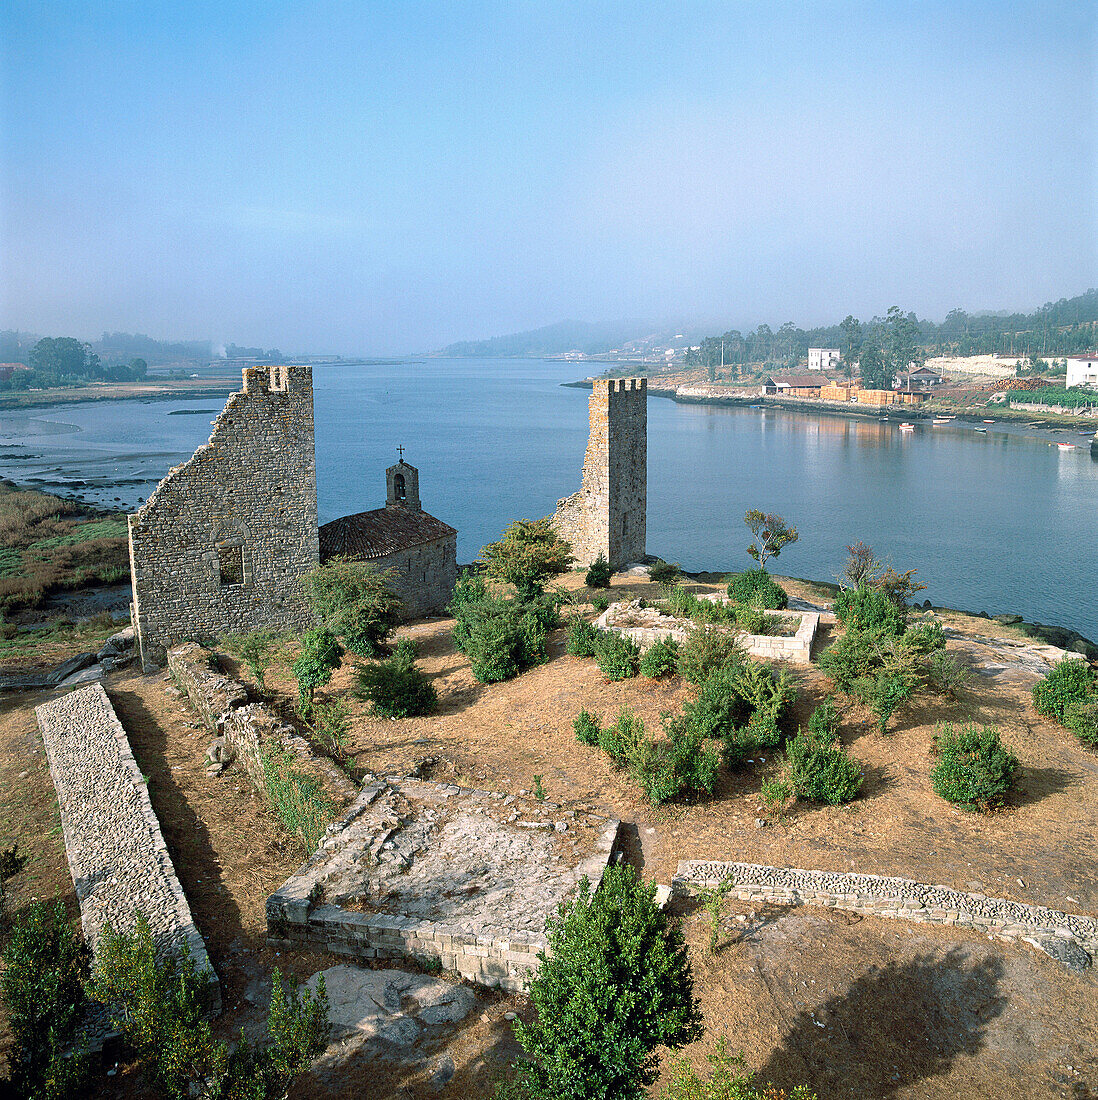 Torres del Oeste (Western Towers), Ría de Arosa, Catoira, Pontevedra province, Galicia, Spain